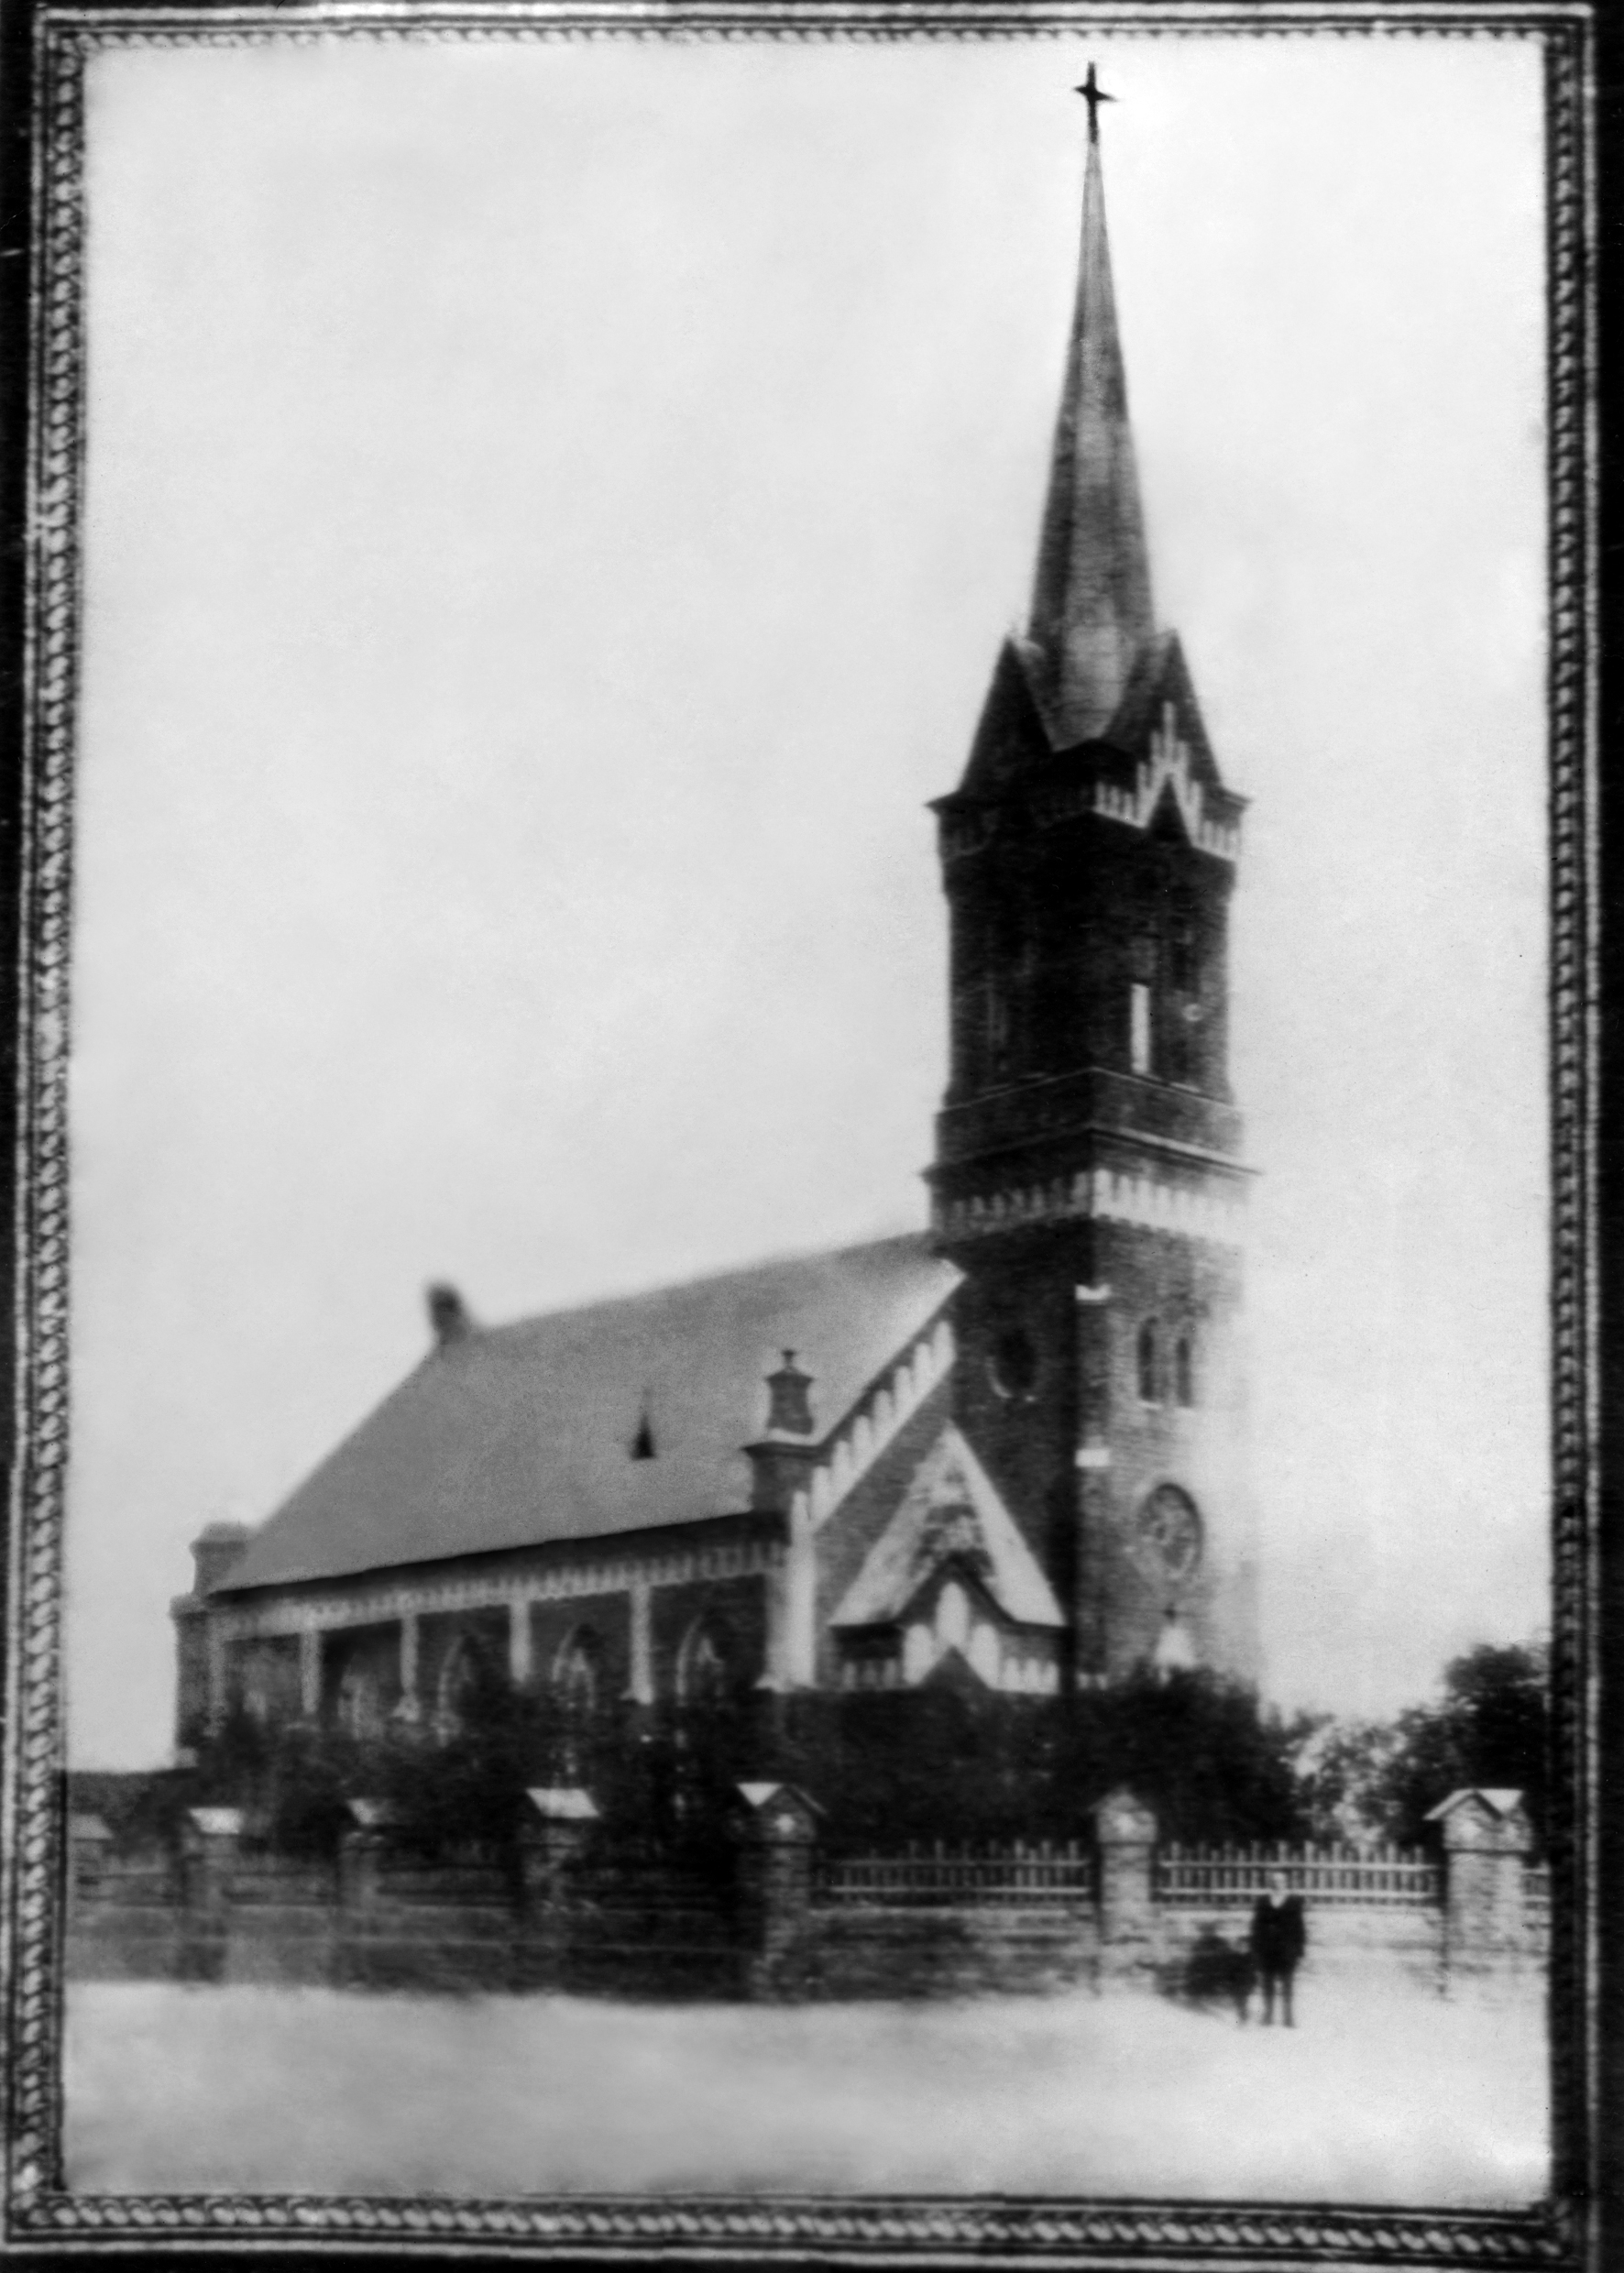 Gnadentau Lutheran Church